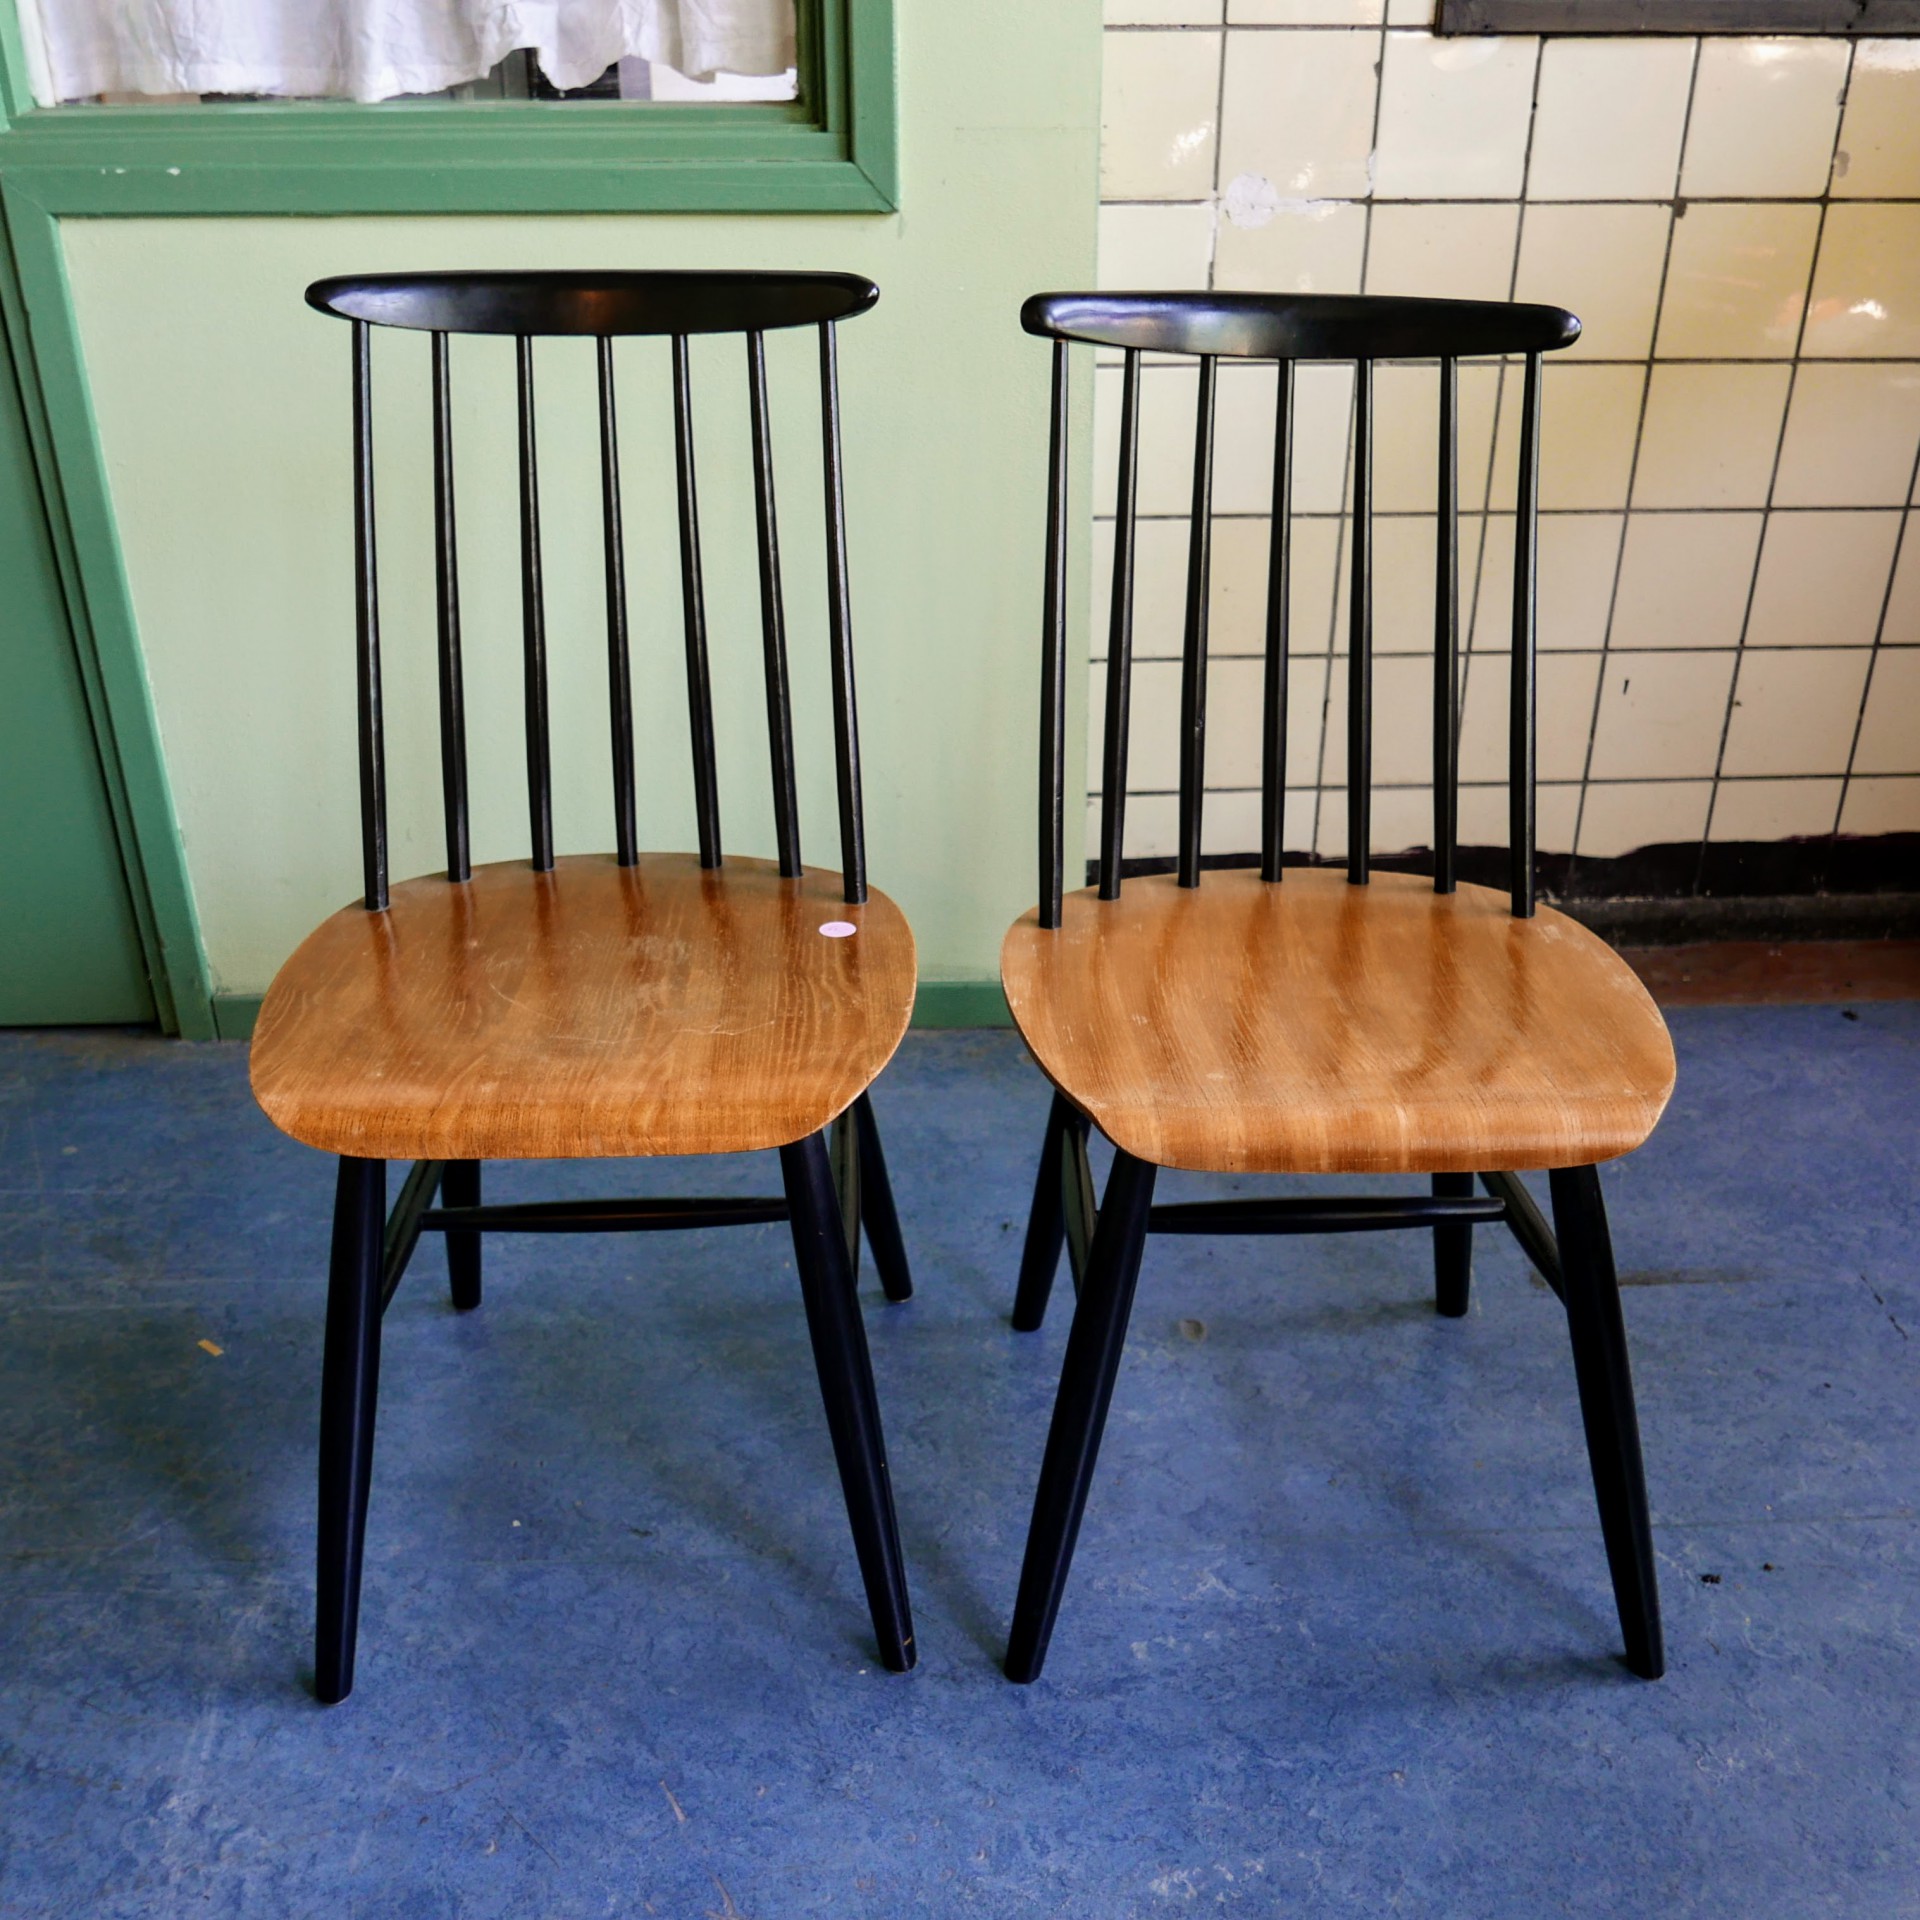 Honger pols terugtrekken Vintage jaren '60 stoel (2x) » Van Dijk & Ko